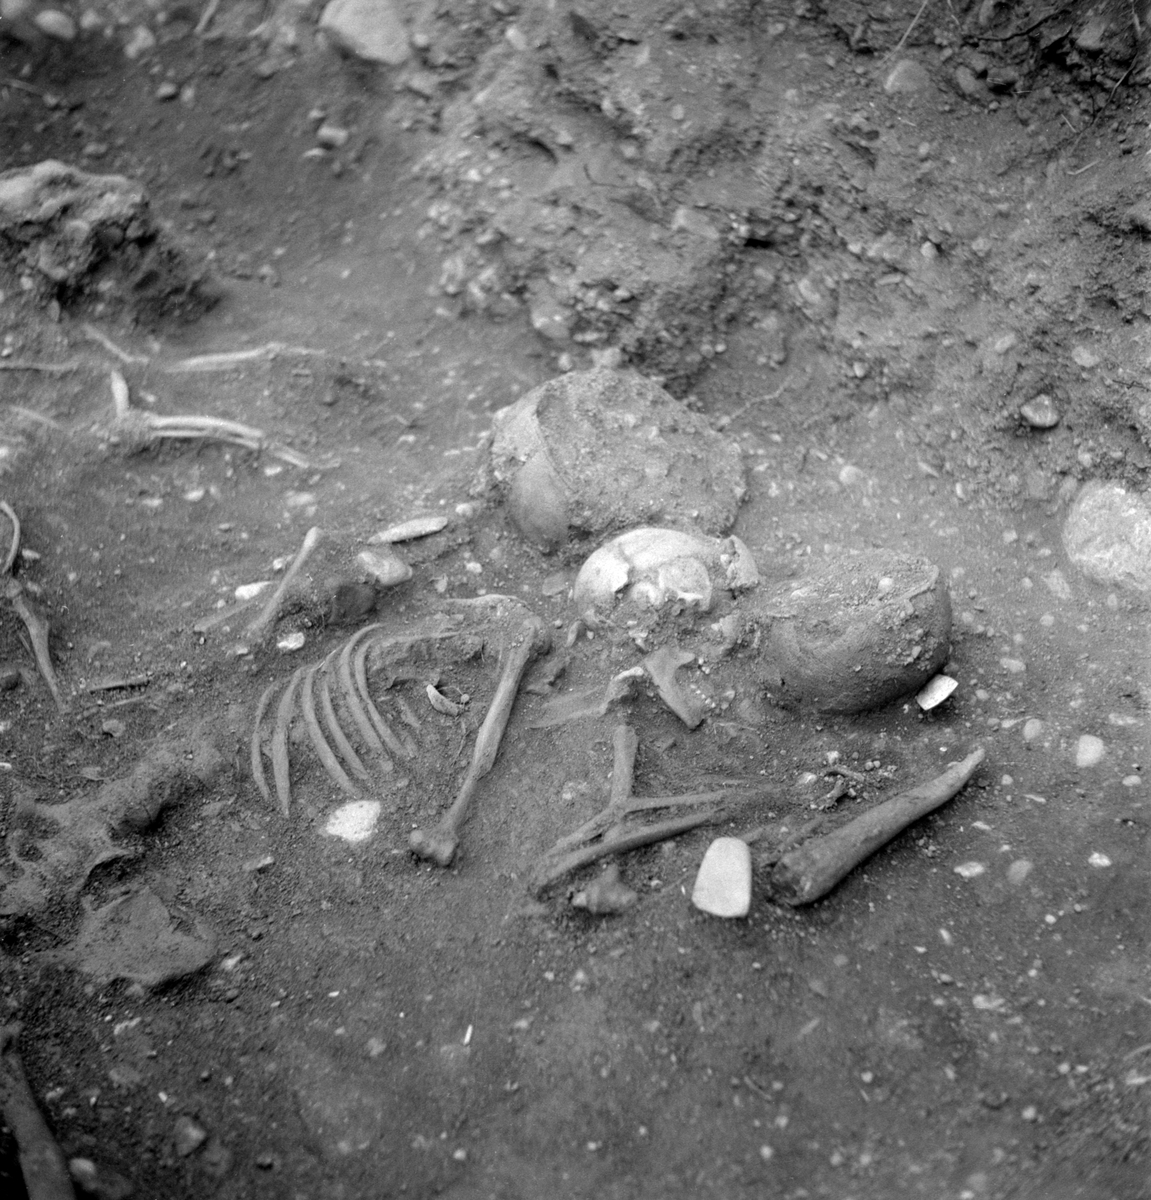 Hösten 1953 gjordes i samband med ombyggnad av vägen mellan Linköping och Vreta kloster, upptäckten av en omkring 4500 år gammal dubbelgrav . Undersökningen genomfördes längs perioden 16-28 november under ytterst ogynnsamma väderleksförhållande med stark kyla, men kunde slutföras väl med stöd av vägentreprenörens hjälpsamhet med anordningar för uppvärmning av arbetsplatsen. Bilden visar gravens kvinnliga skelett med hennes gravgåvor. Bakom kvinnan ses skelettet efter en hund. De små benen mellan tassarna skulle senare tolkas vara rester efter ett spädbarn. Gravens manliga skelett är utom bild.